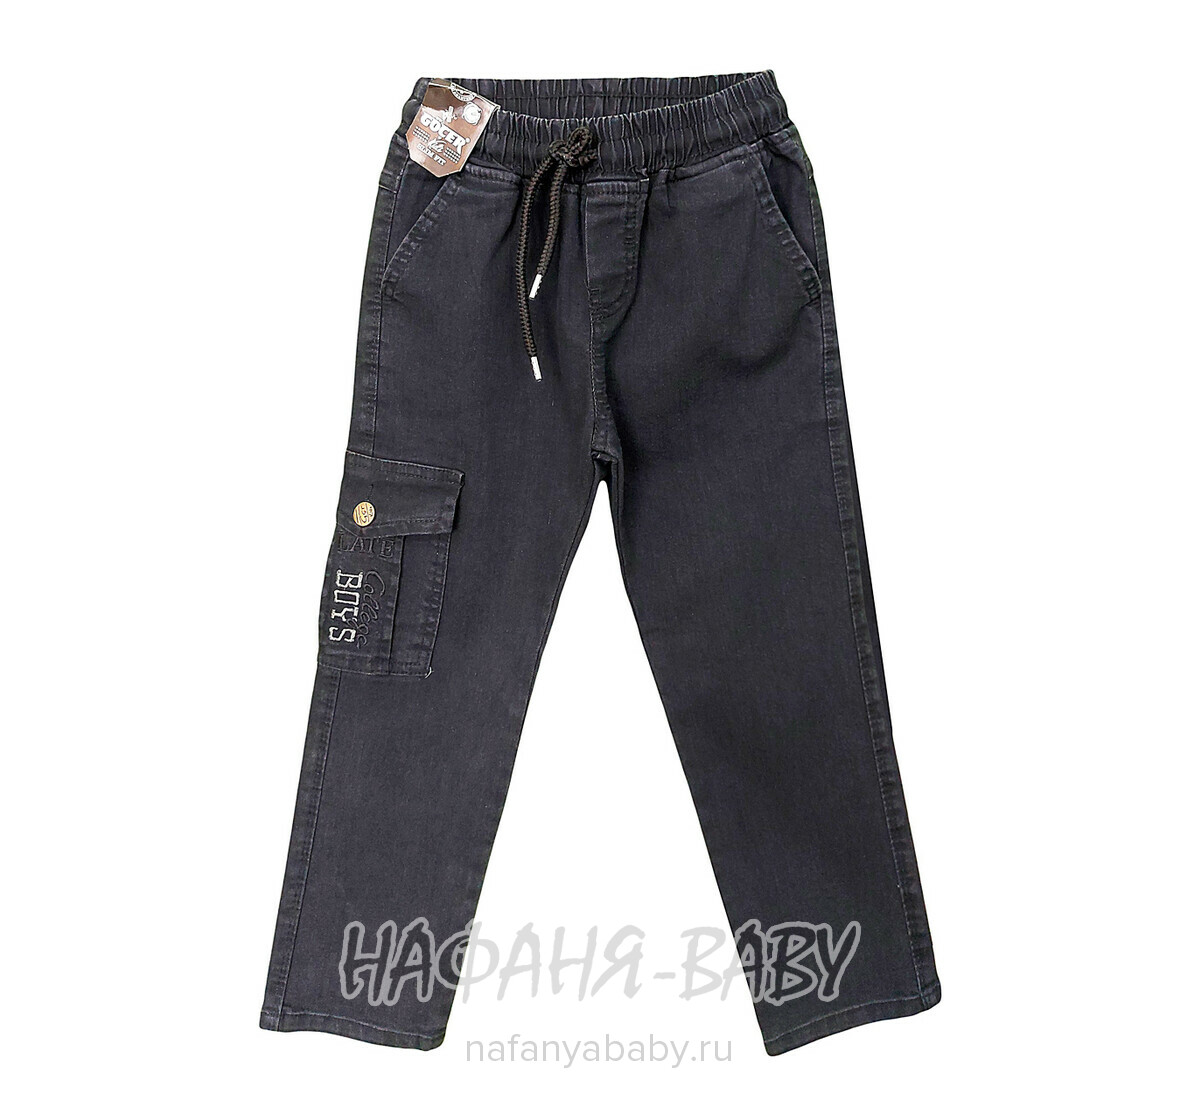 Детские джинсы GOCER арт: 4481 для мальчика от 3 до 7 лет, цвет черный, оптом Турция